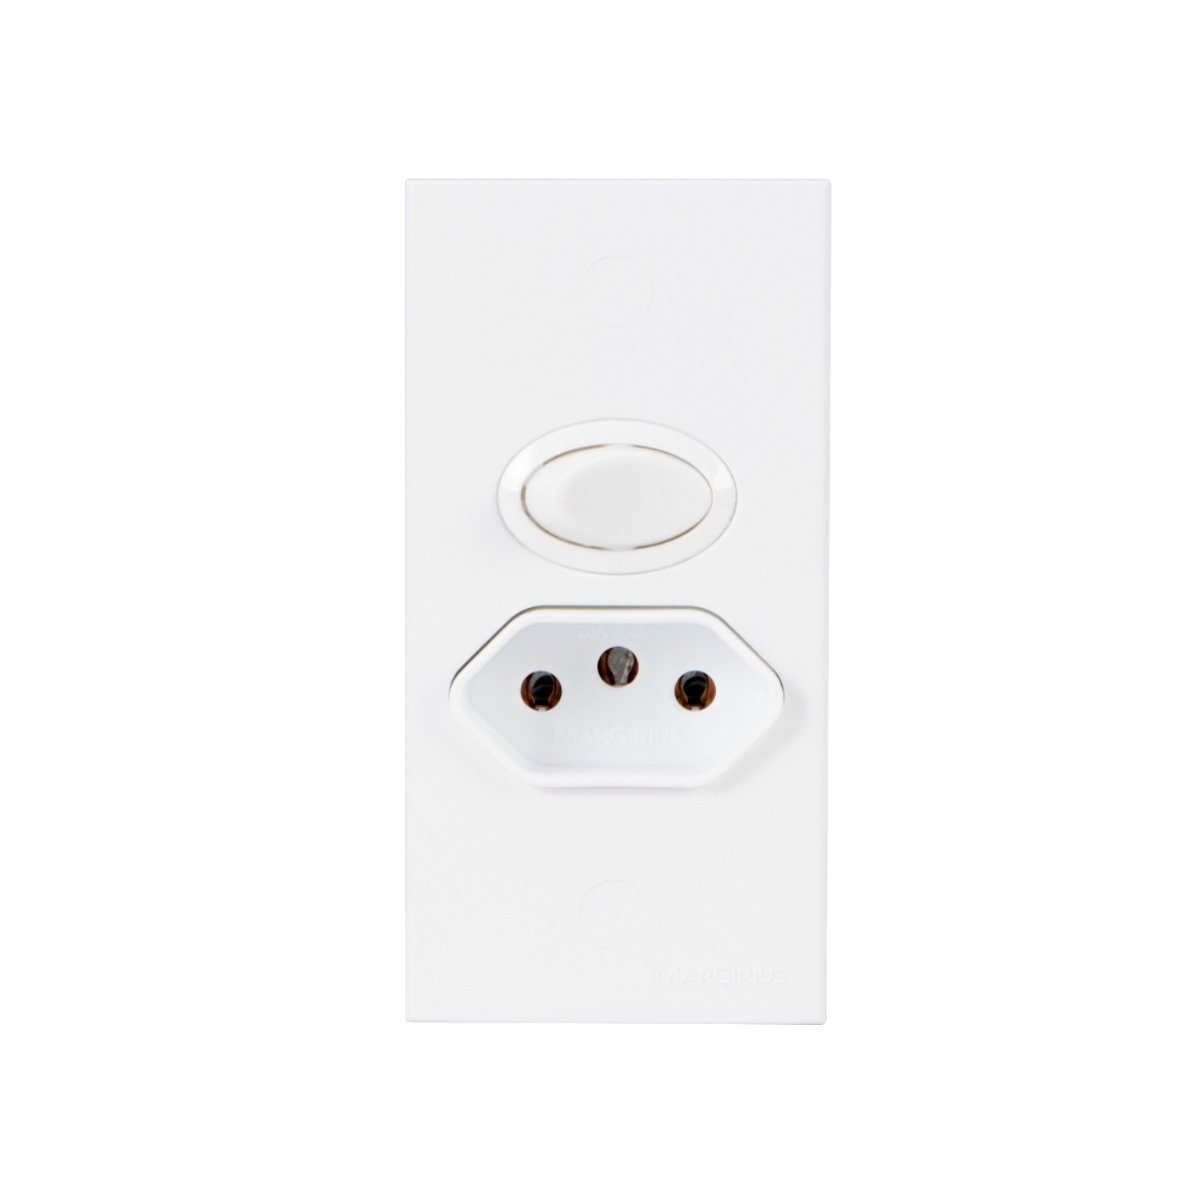 Interruptor com Tomada para Móveis Br Cm2-32 Margirius Cor:branco - 1